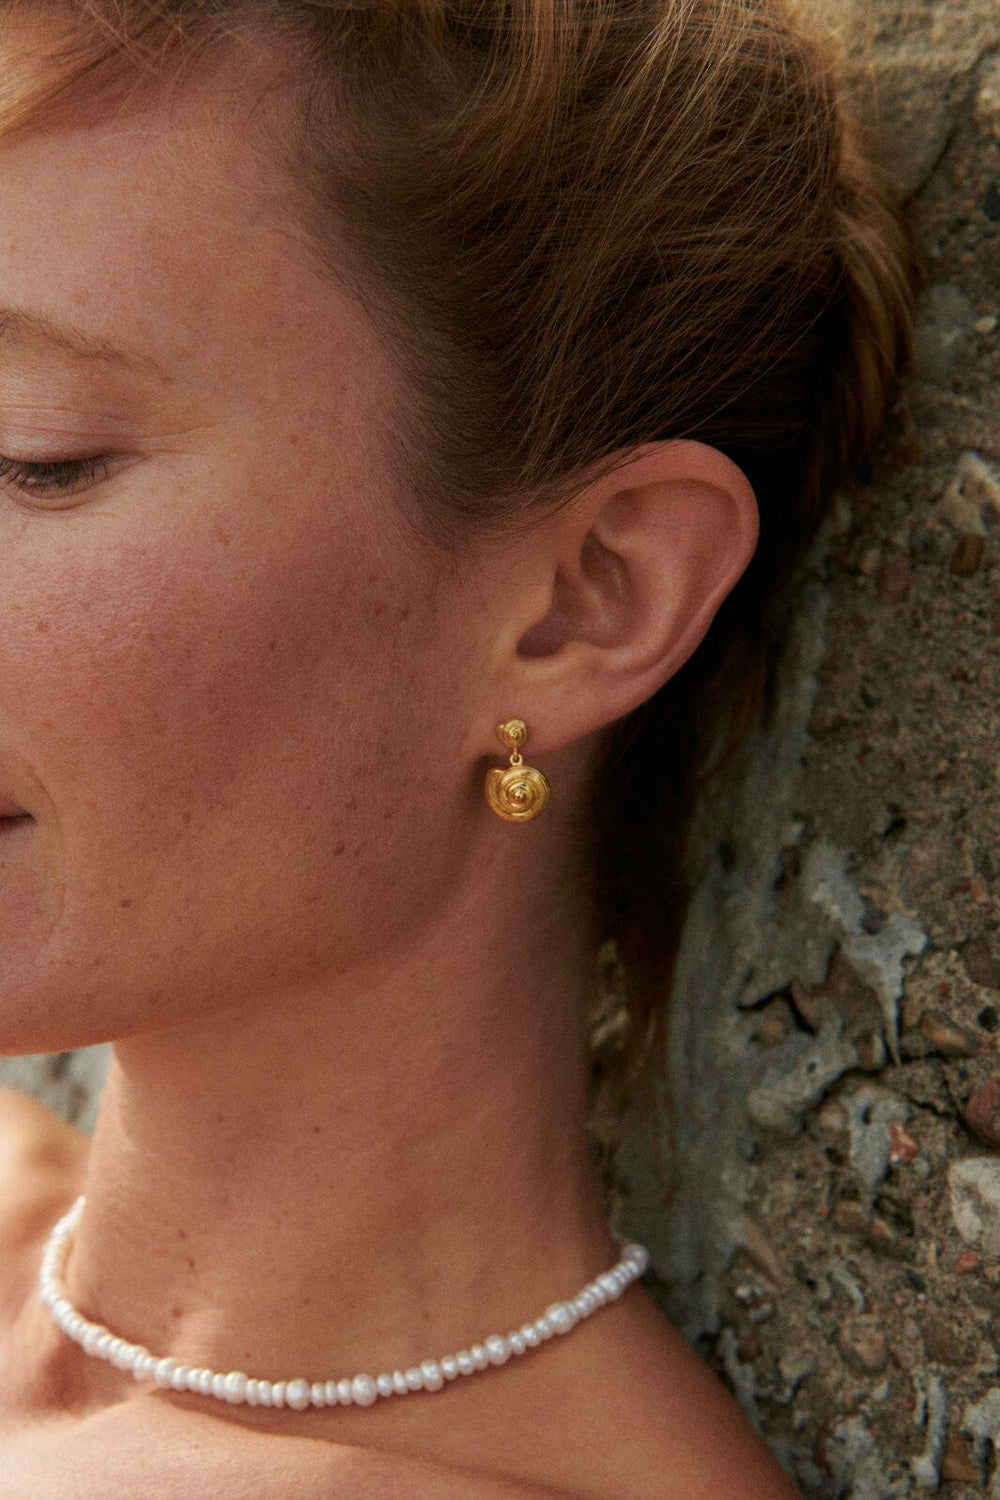 Forudbestilling - Pernille Corydon Jewellery - Reef Earrings - Gold Øreringe 